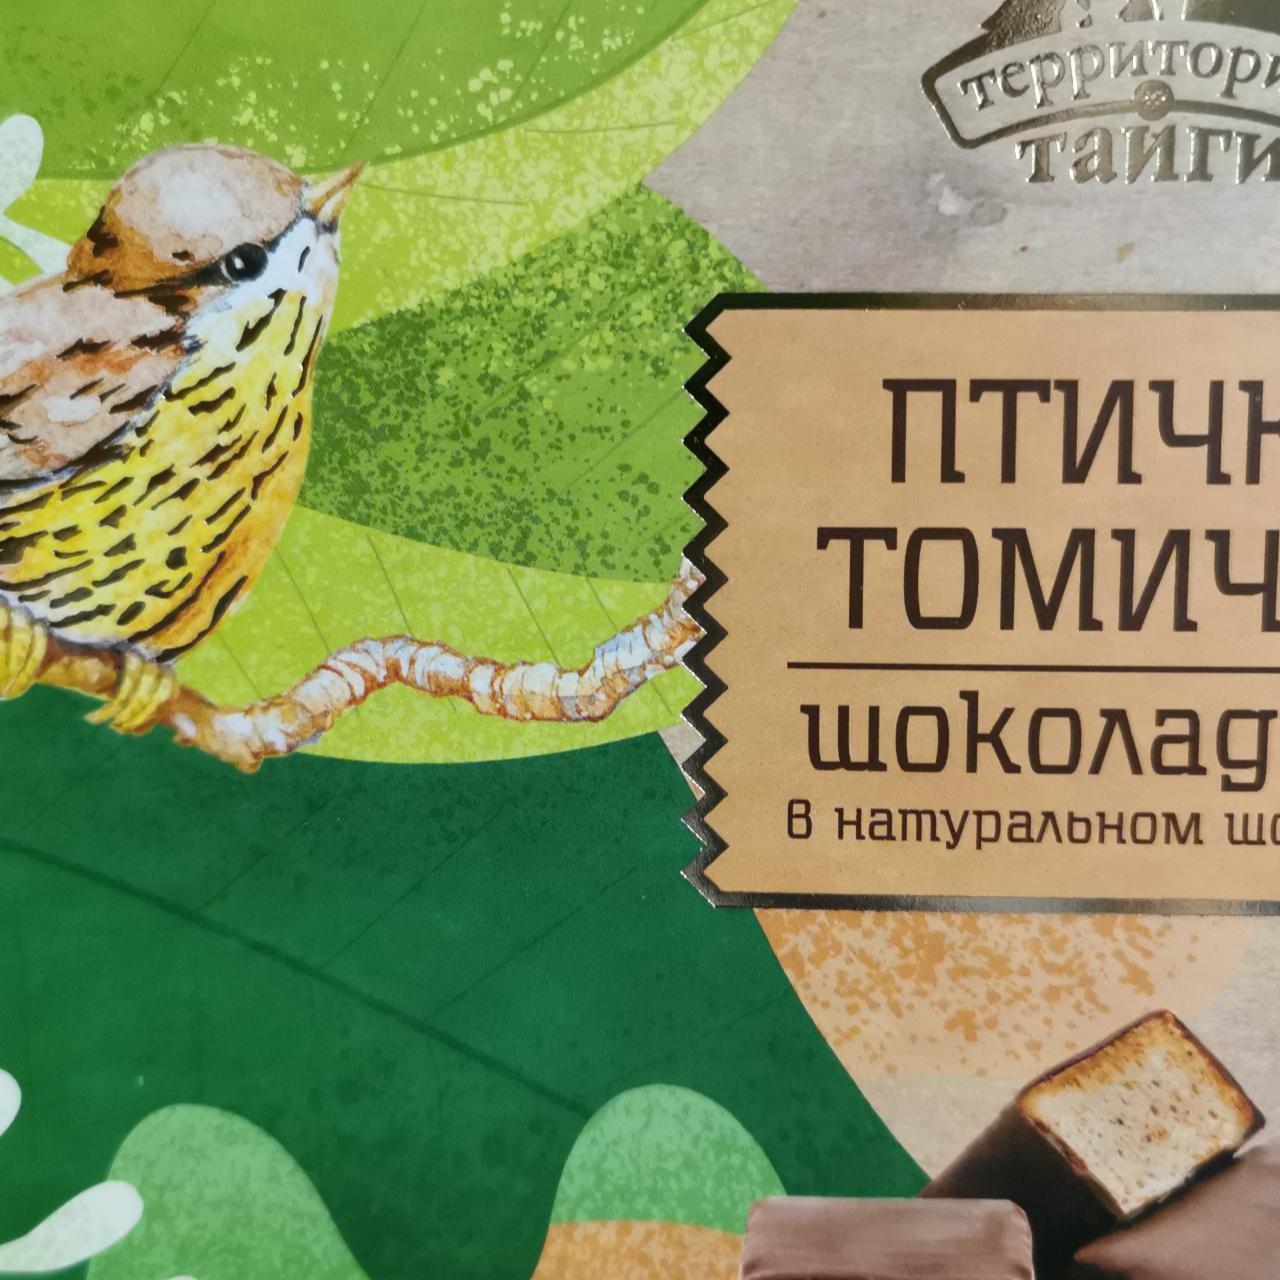 Фото - Птичка томичка шоколадная в натуральном шоколаде Территория Тайги